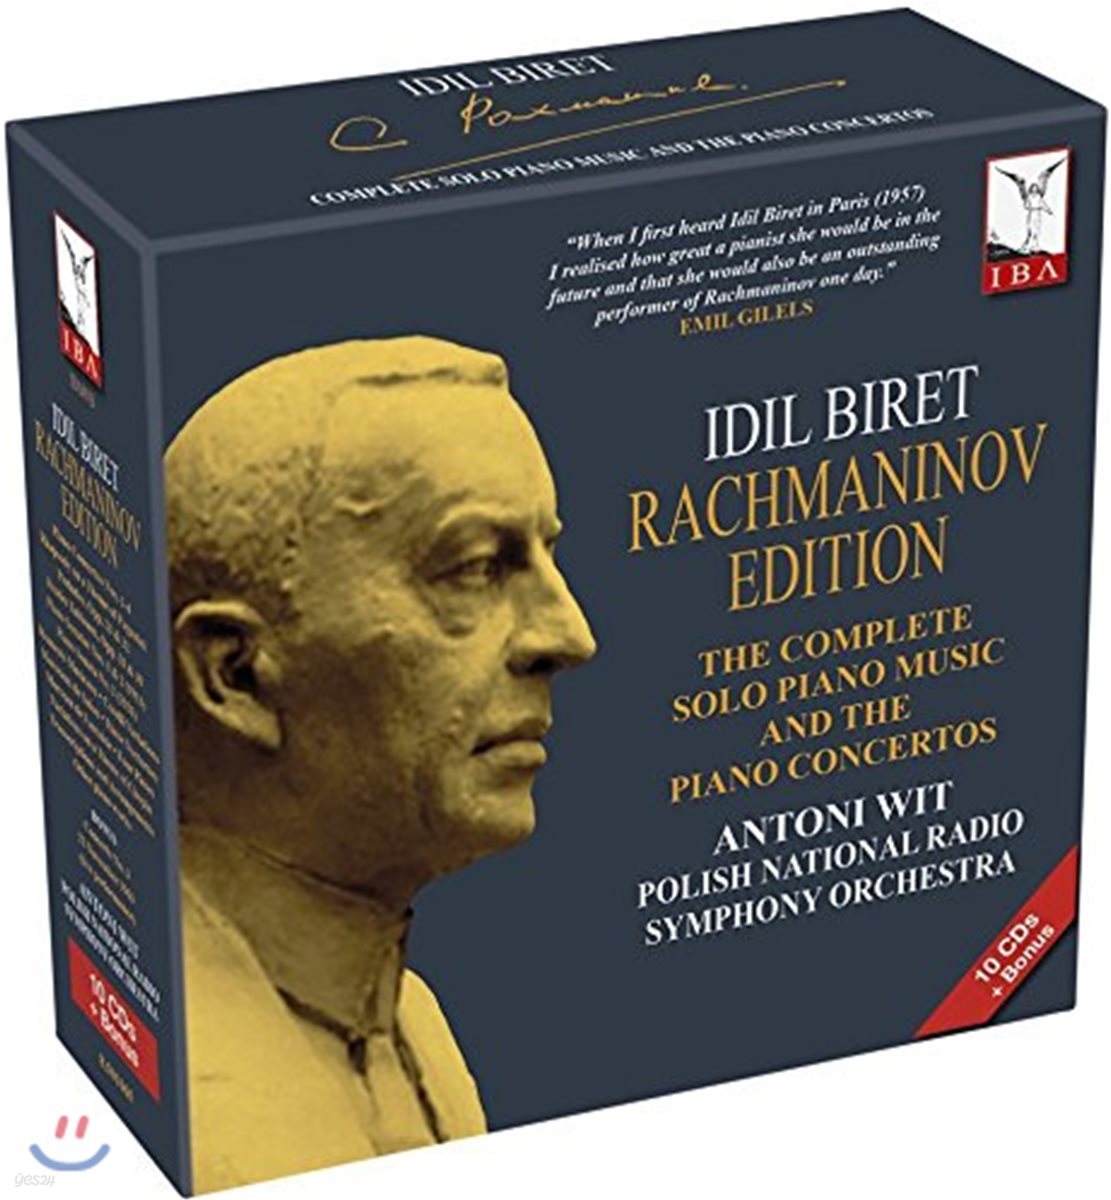 Idil Biret 이딜 비렛 라흐마니노프 에디션: 피아노 독주곡과 협주곡 전집 (Rachmaninov Edition)